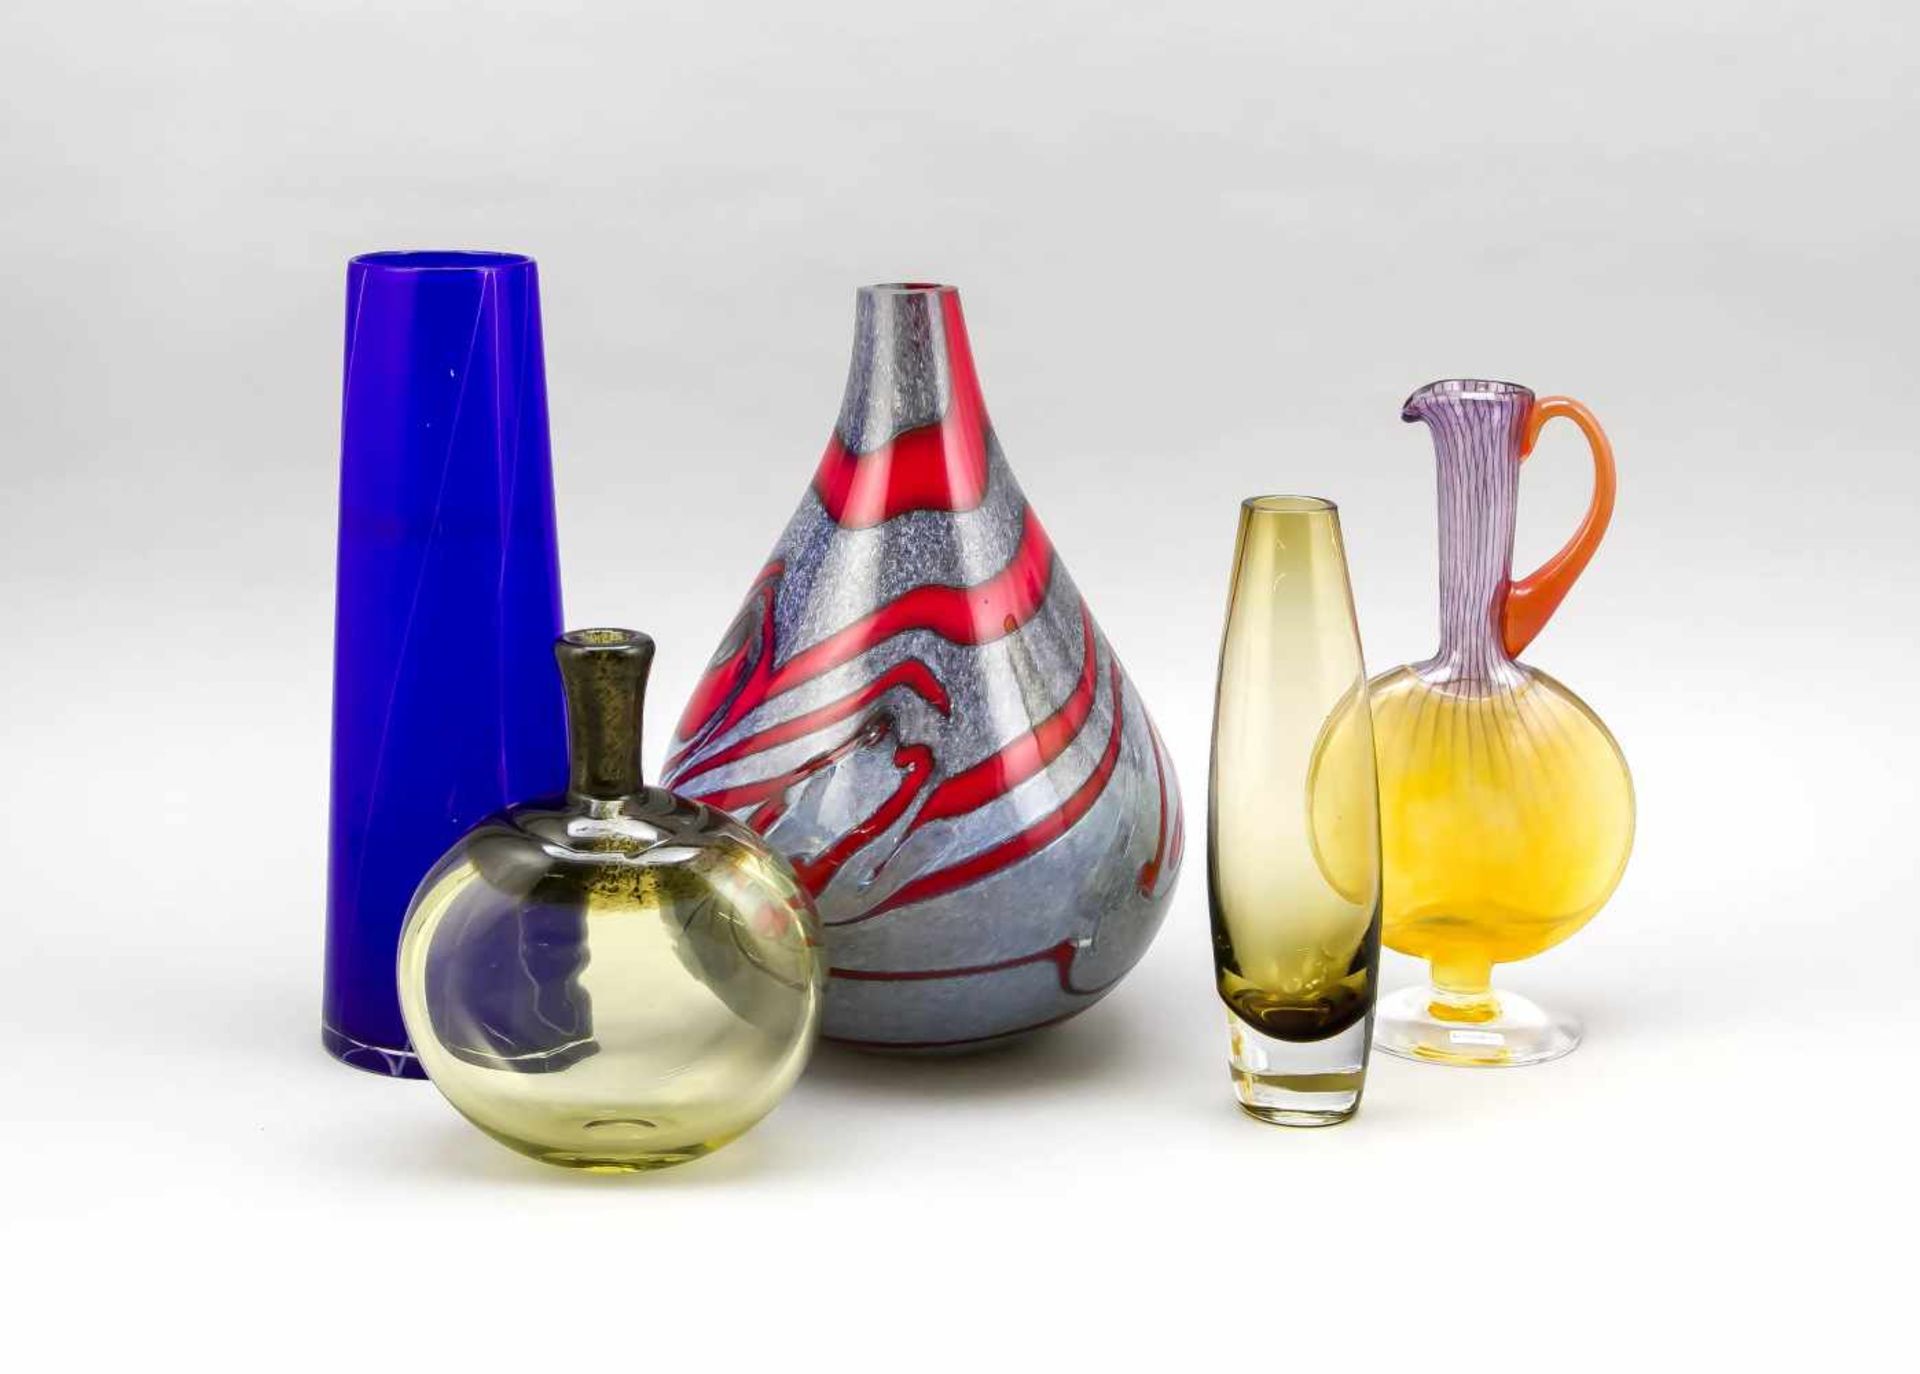 Konvolut von fünf Vasen, 2. H. 20. Jh., unterschiedliche Formen und Größen, klares undfarbiges Glas,